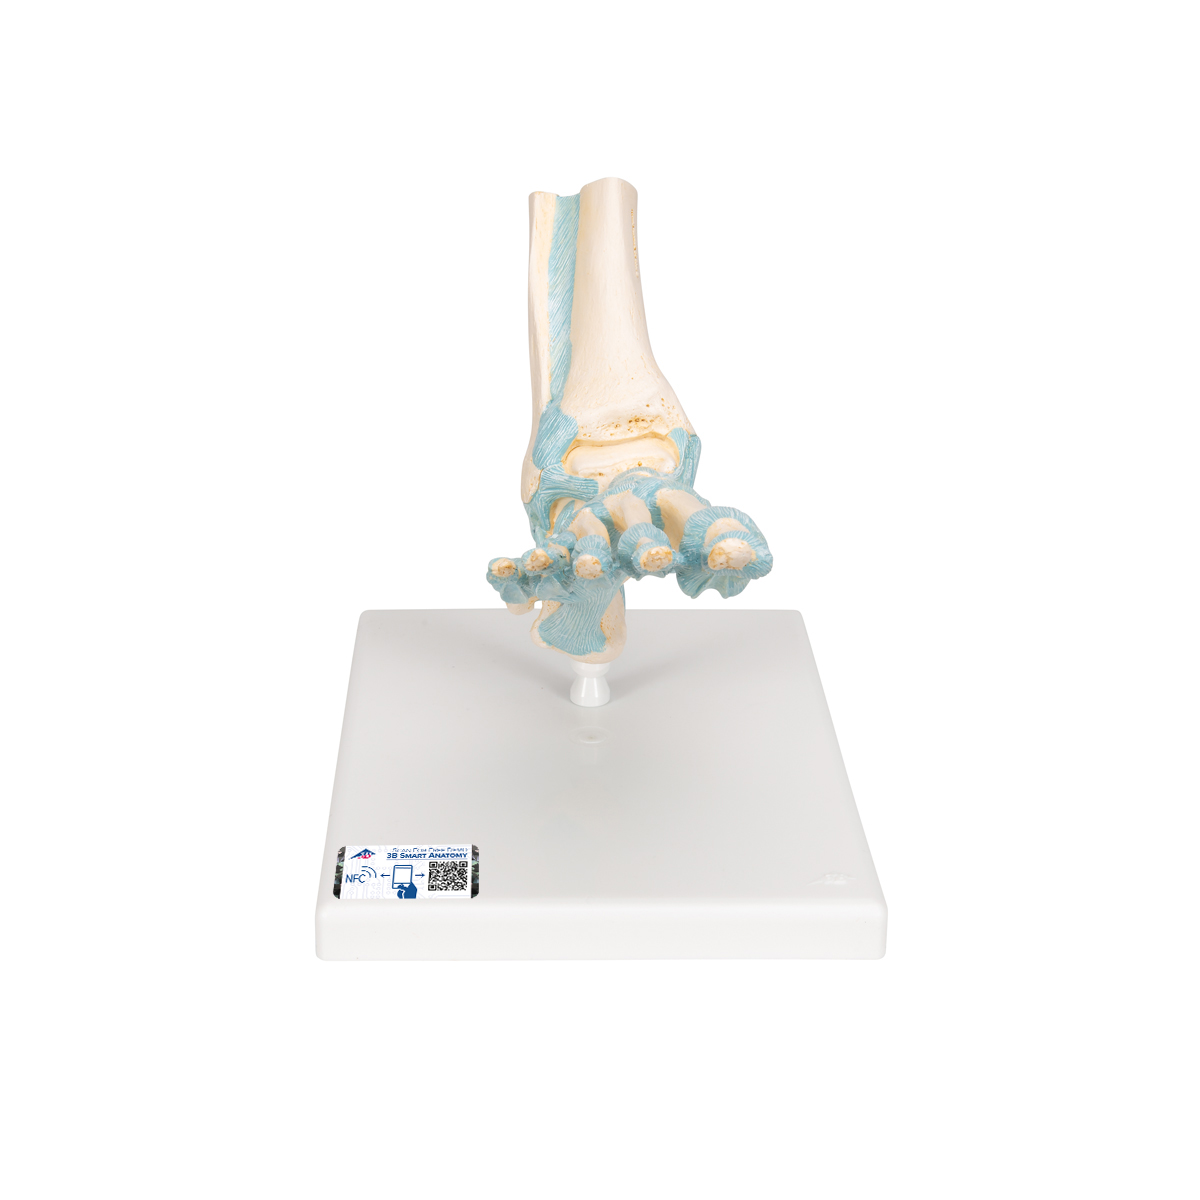 Modell des Fußskeletts mit Bändern - 3B Smart Anatomy, Bestellnummer 1000359, M34, 3B Scientific